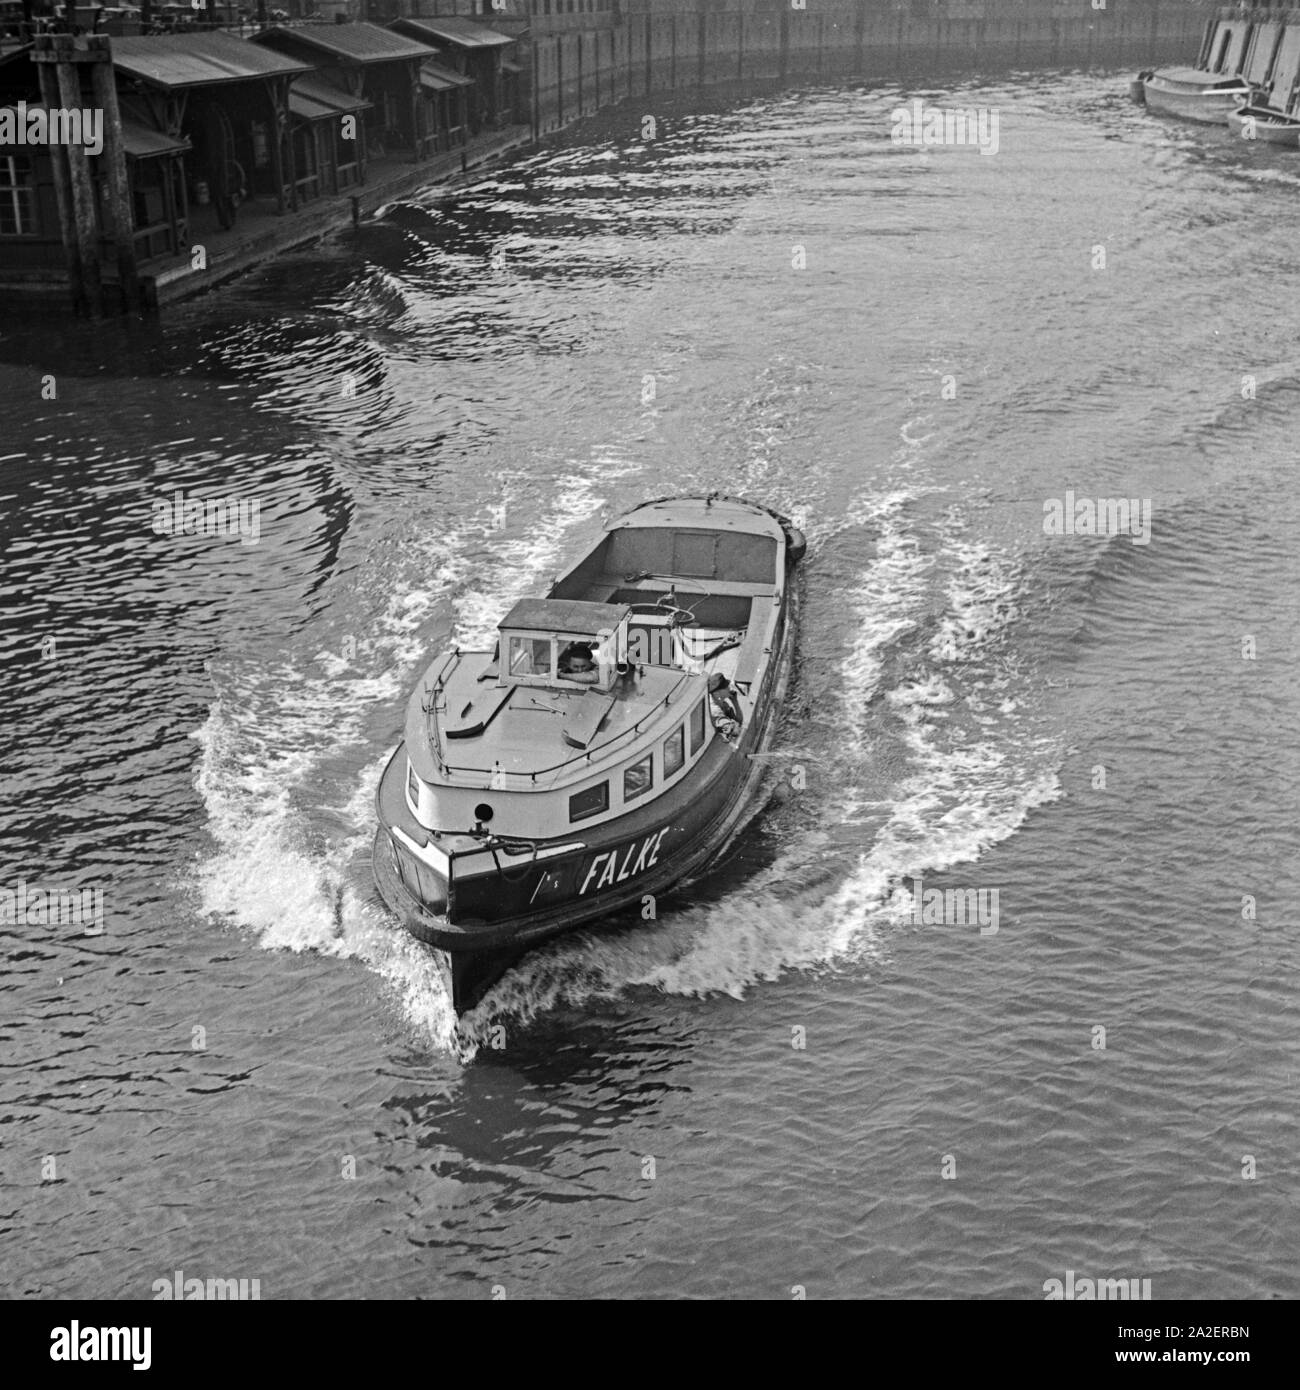 Die Barkasse 'Falke' im Hafen von Deutz, Deutschland 1930er Jahre. Barch 'Falke' al porto di Deutz, Germania 1930s. Foto Stock